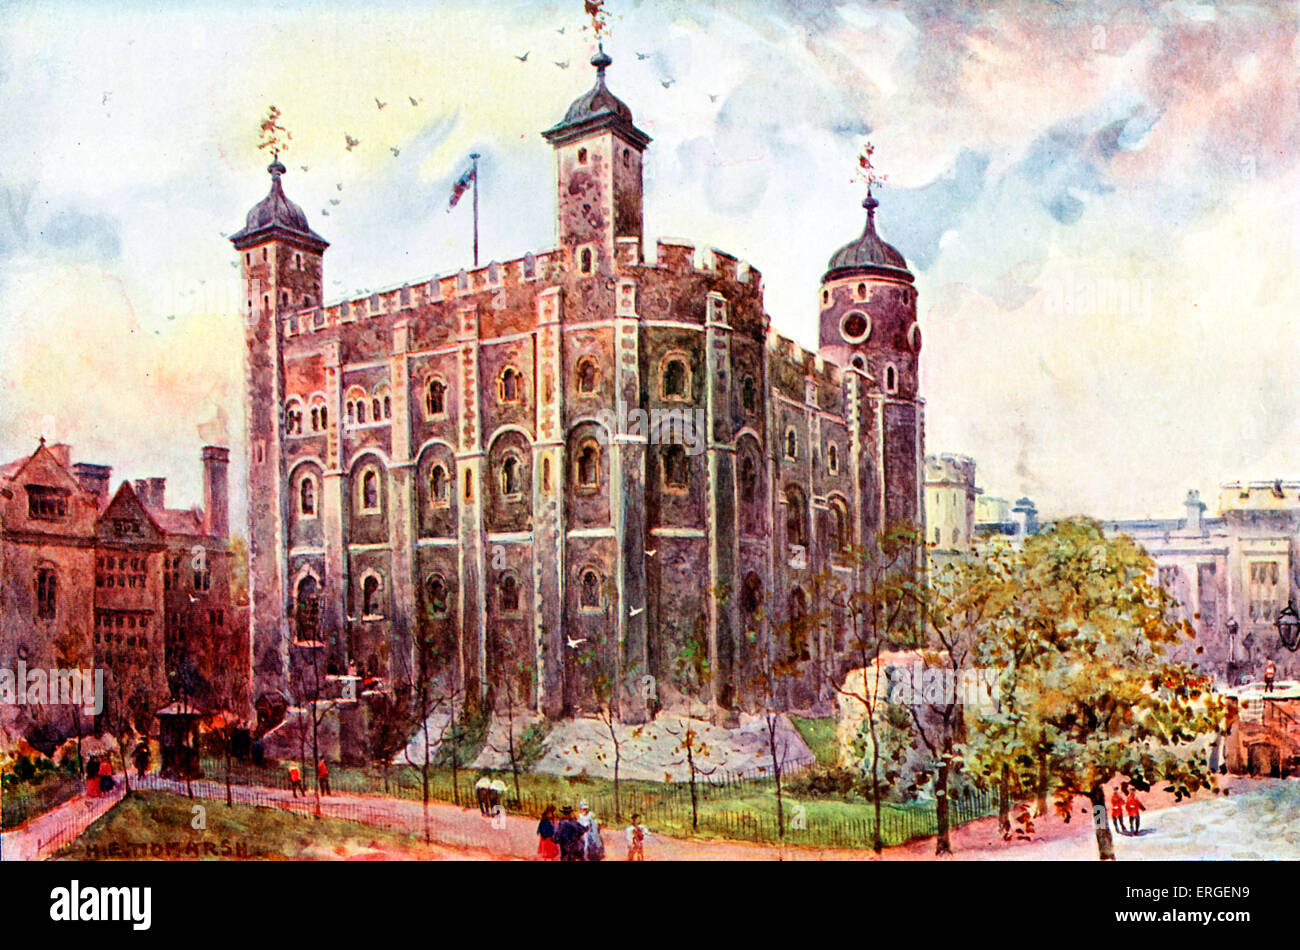 La Tour Blanche, la Tour de Londres, UK - fin du xixe siècle, de la peinture d'impression par S. Tidmarsh. Garder la tour. Banque D'Images